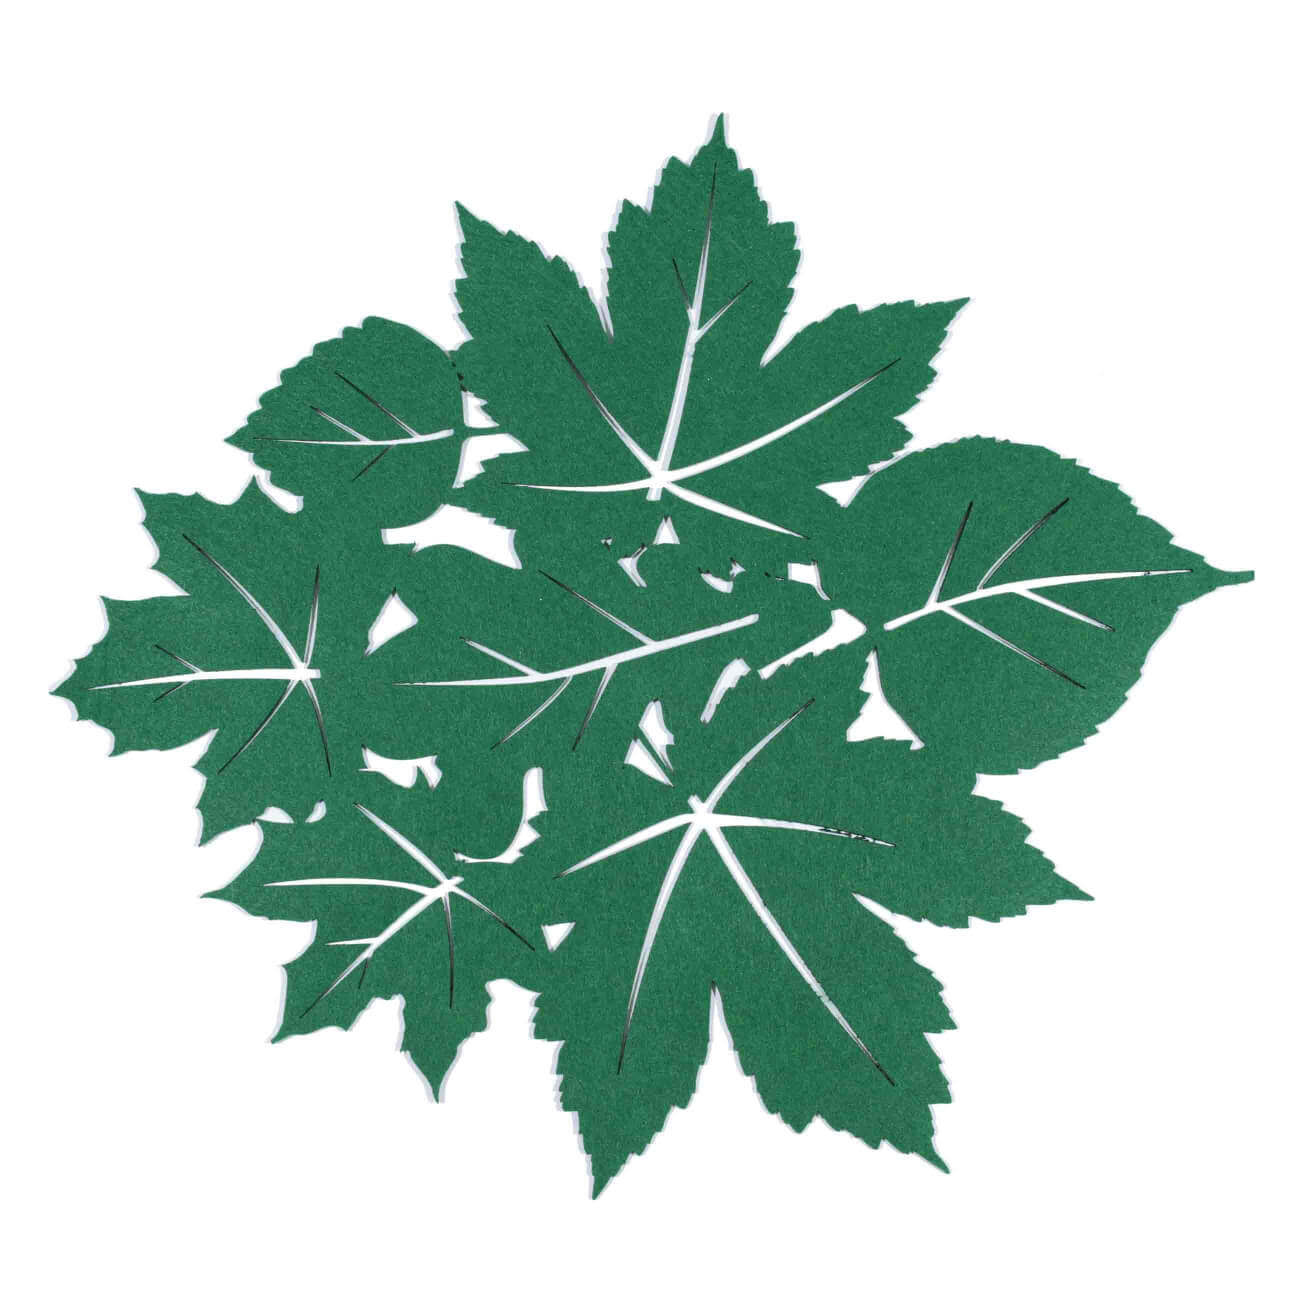 Салфетка под приборы, 42x46 см, фетр, фигурная, зеленая, Осенние листья, Felt mat изображение № 1